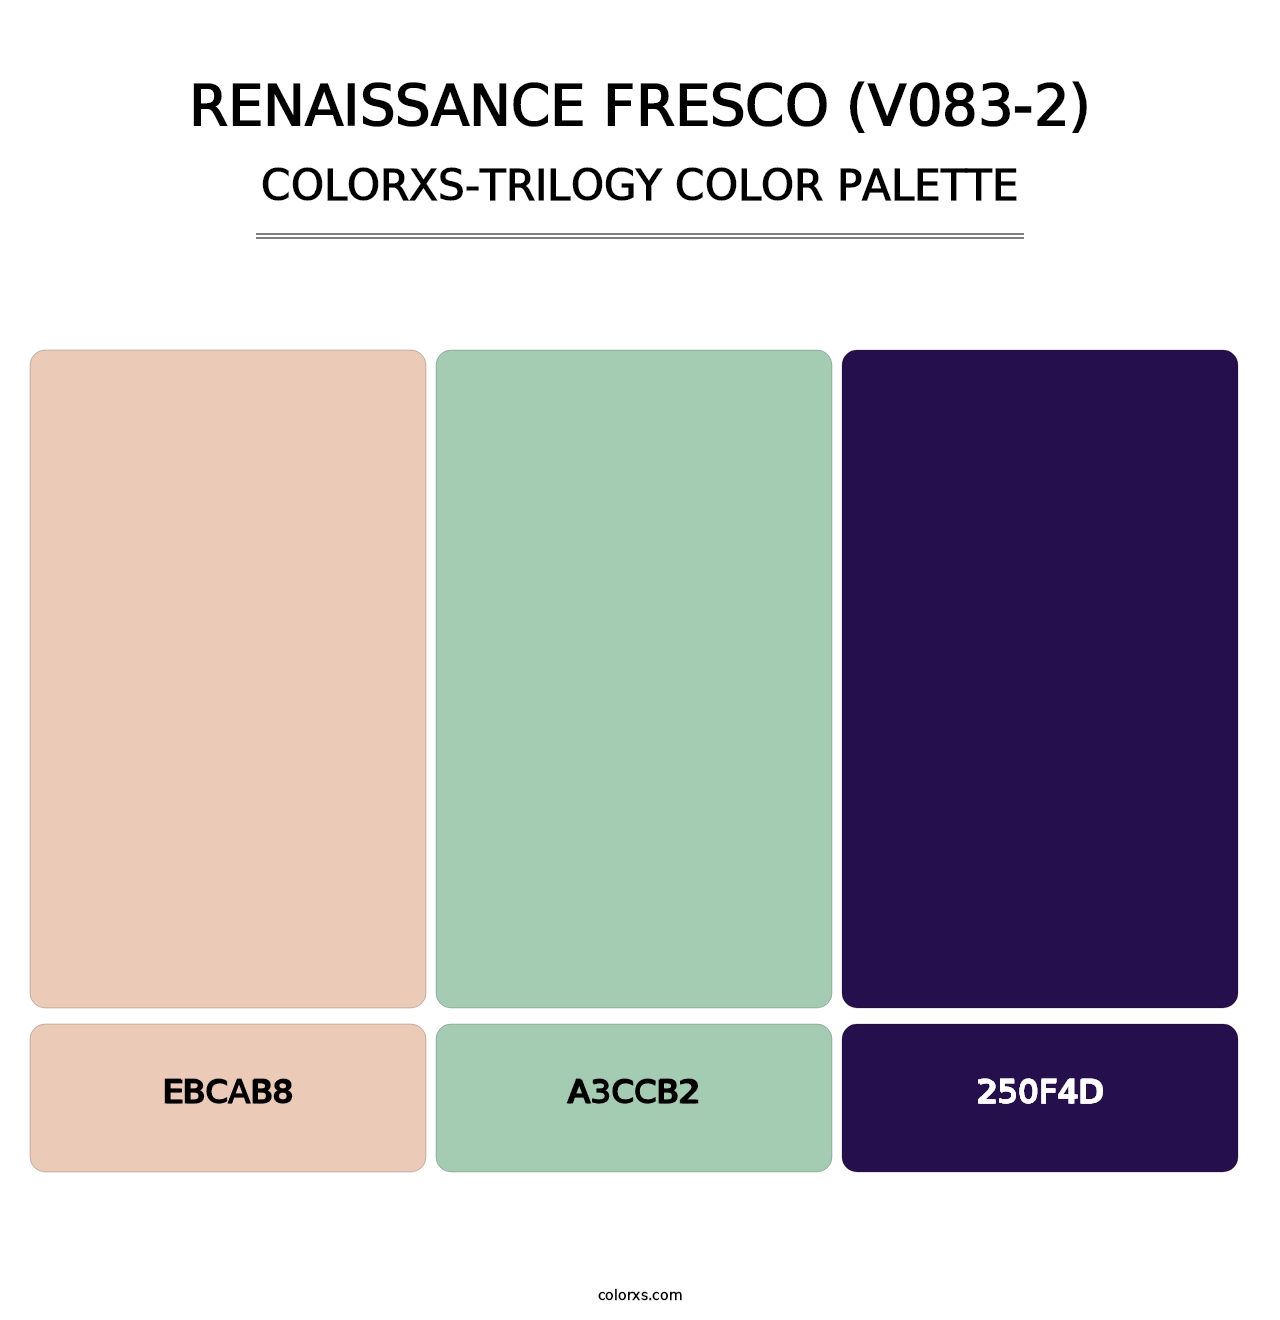 Renaissance Fresco (V083-2) - Colorxs Trilogy Palette